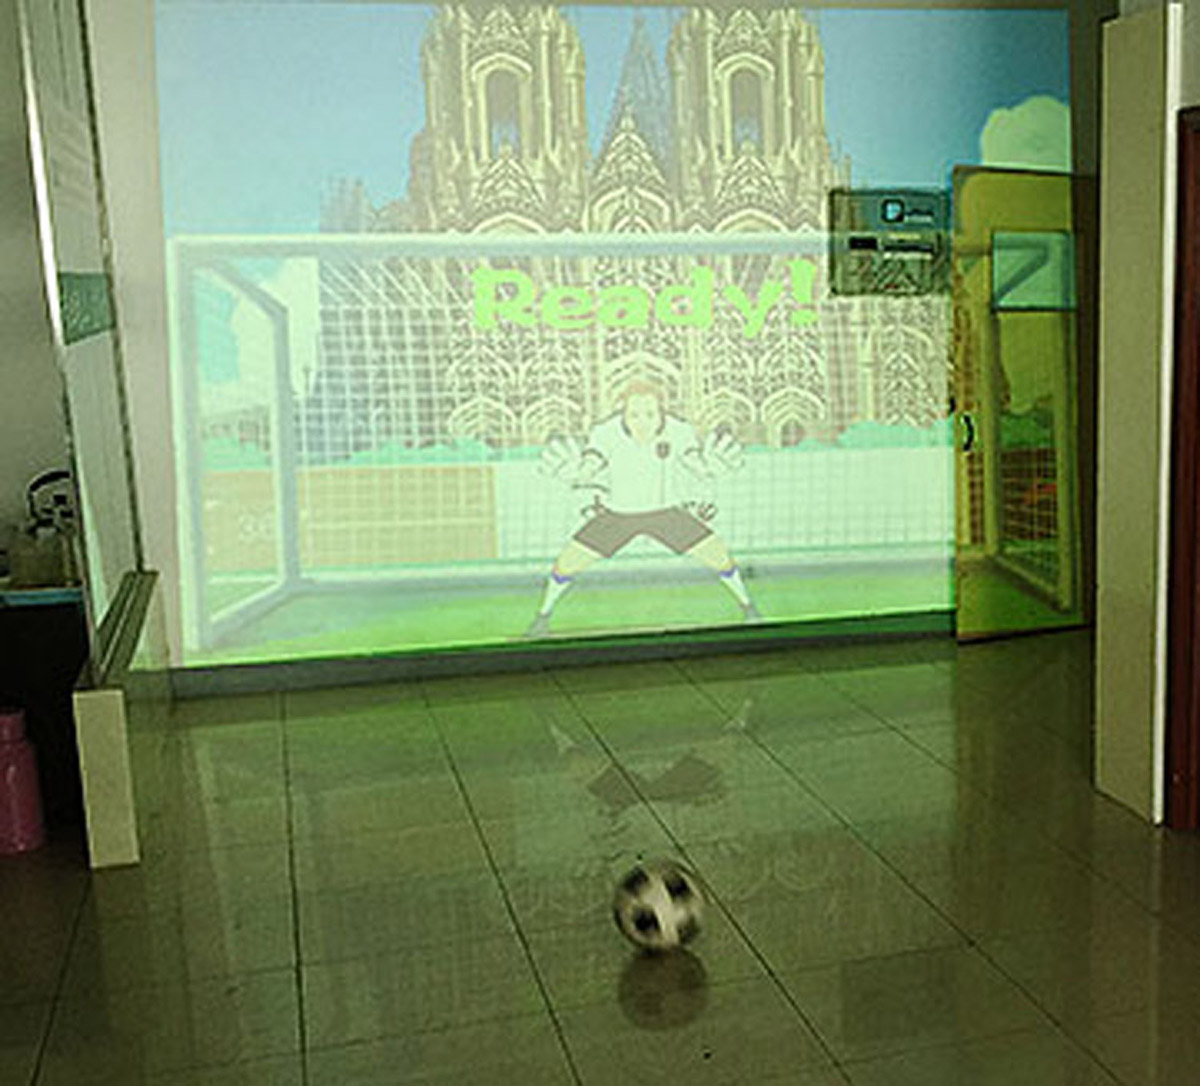 飓风使用体感识别技术的虚拟足球射门.jpg